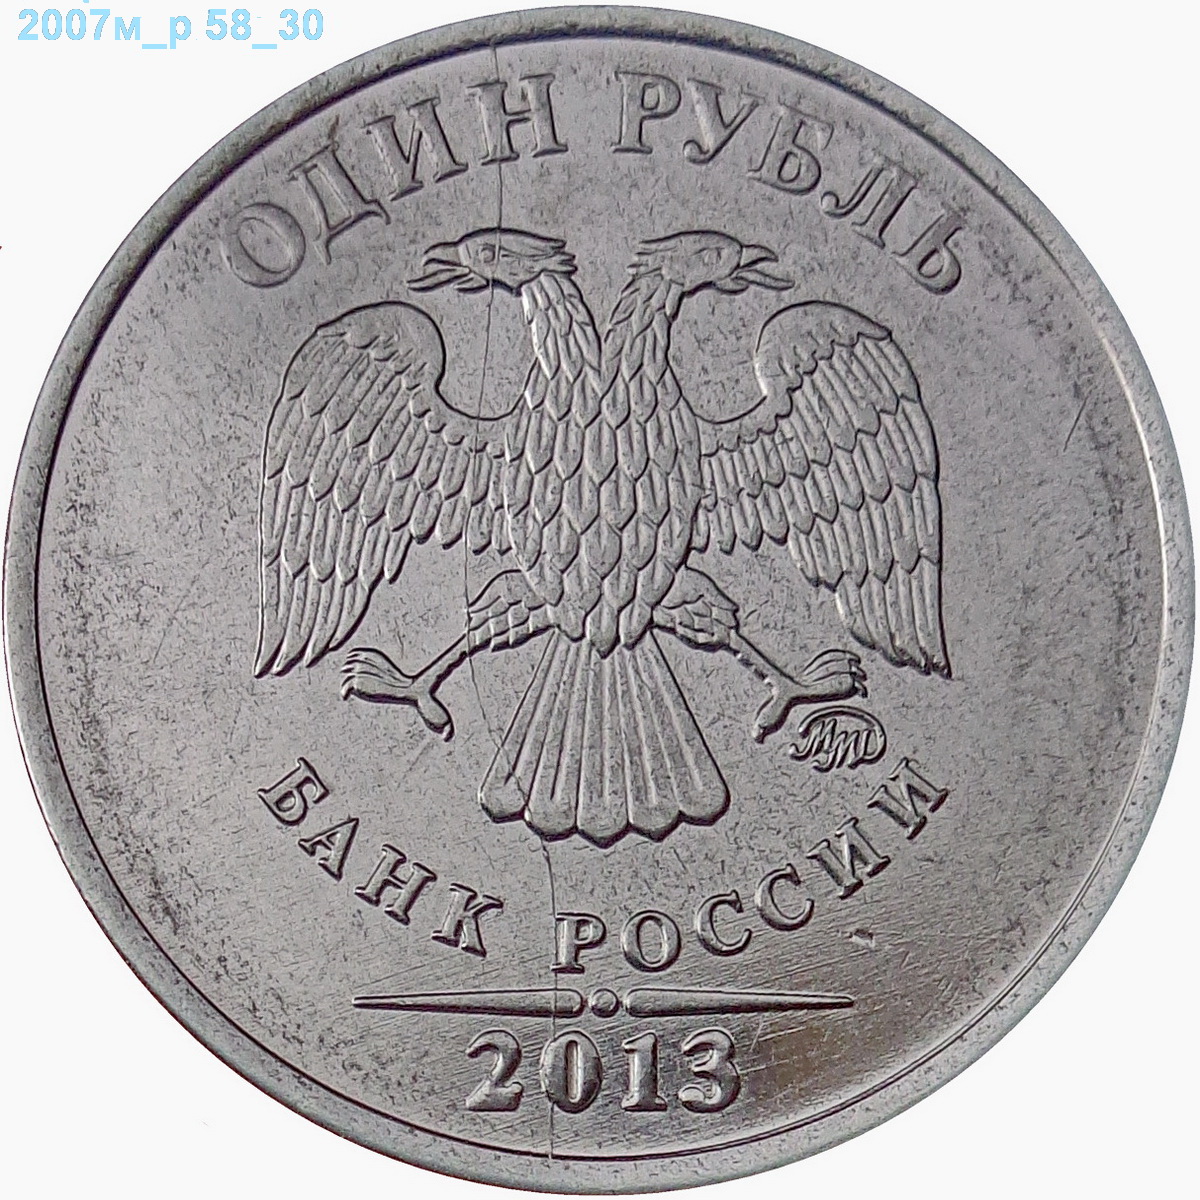 1 руб 2024 года. Монета 5 рублей Обратная сторона. Лицевая сторона 5 рублей. Оборотная сторона рубля. Рубль монета Обратная сторона.